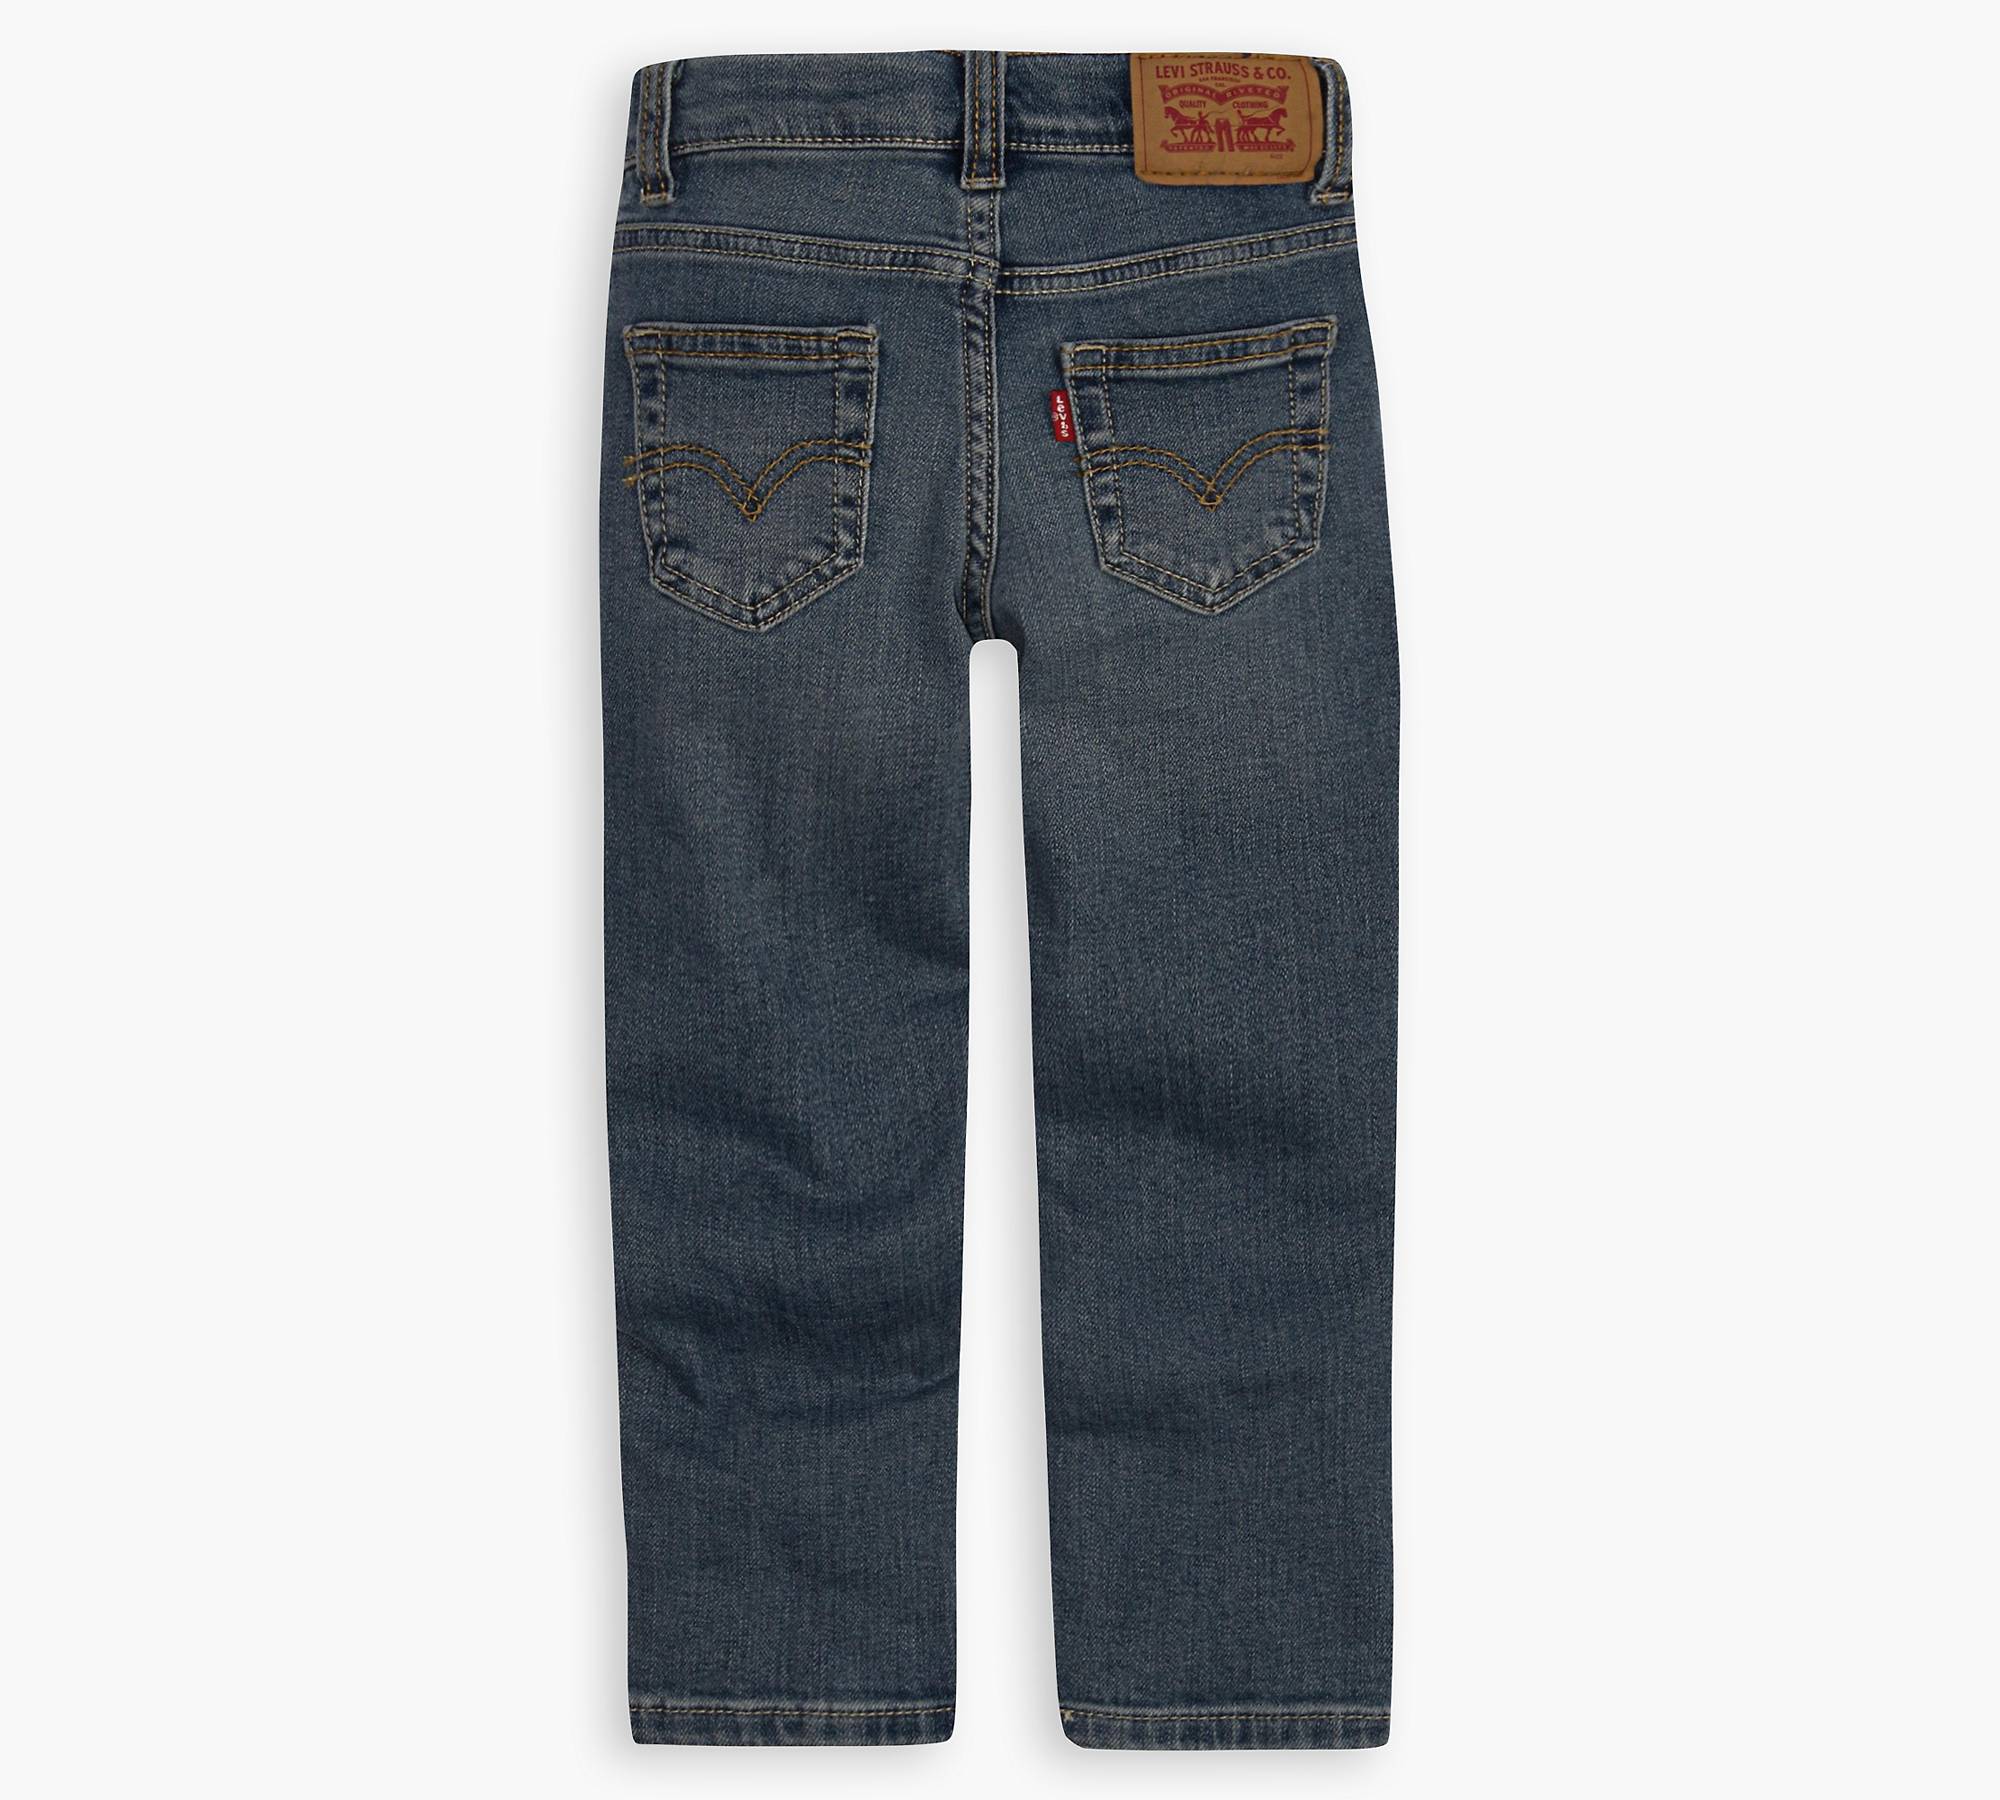 512™ Slim Taper Fit Big Boys Jeans 8-20 - Medium Wash | Levi's® US